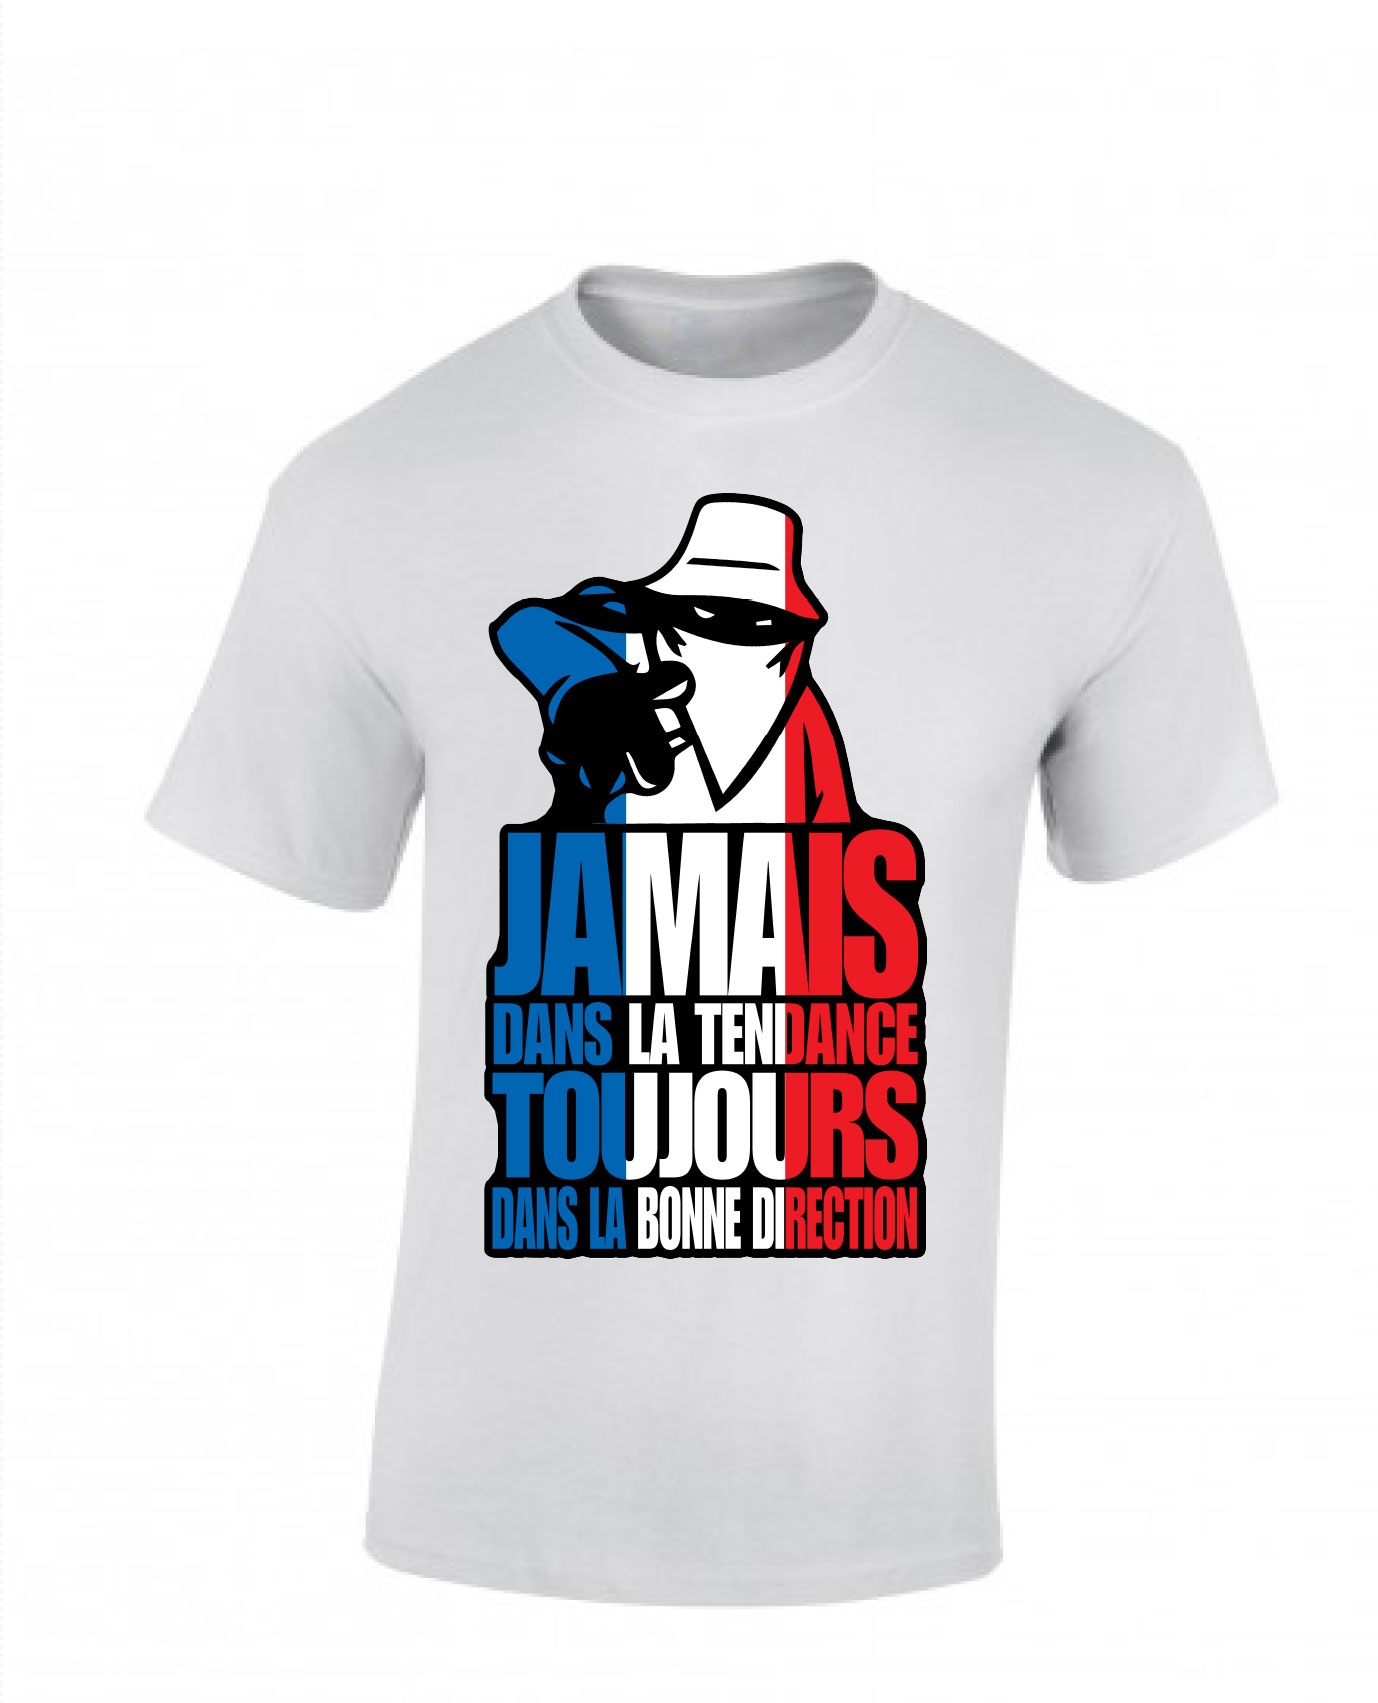 tee-shirt "jamais dans la tendance" France de scred connexion sur Scredboutique.com